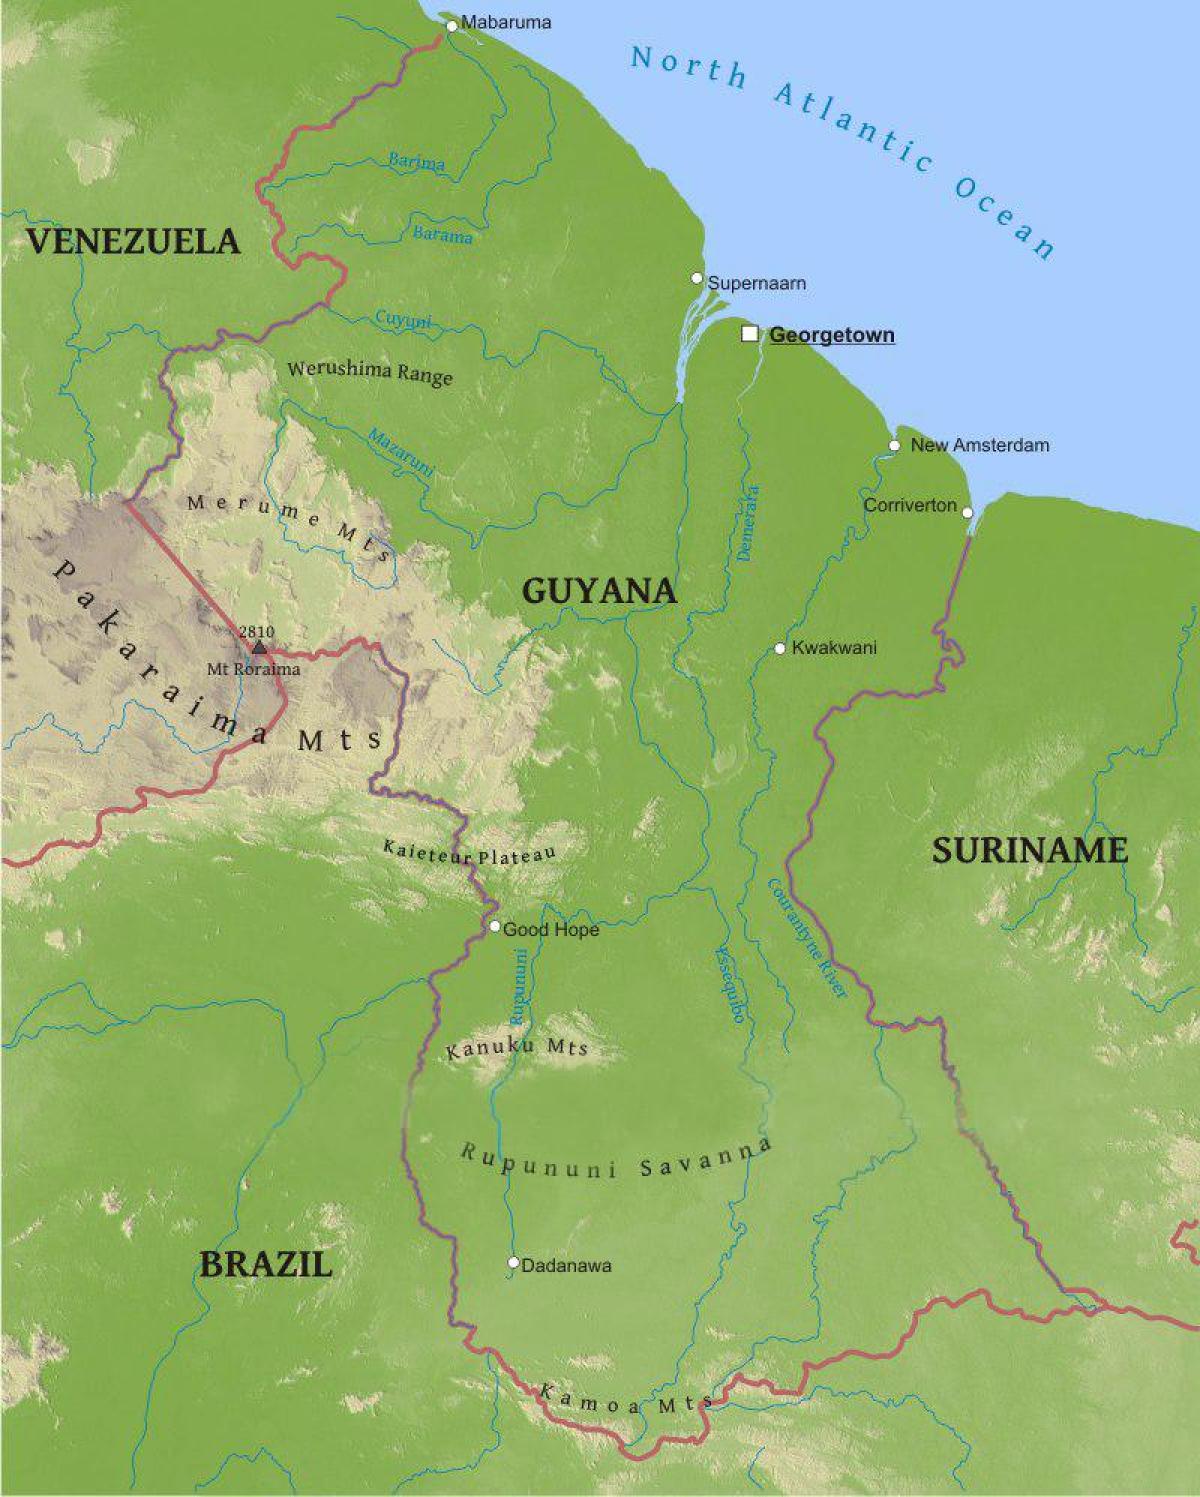 térkép Guyana mutatja, hogy az alacsony part menti síkságon